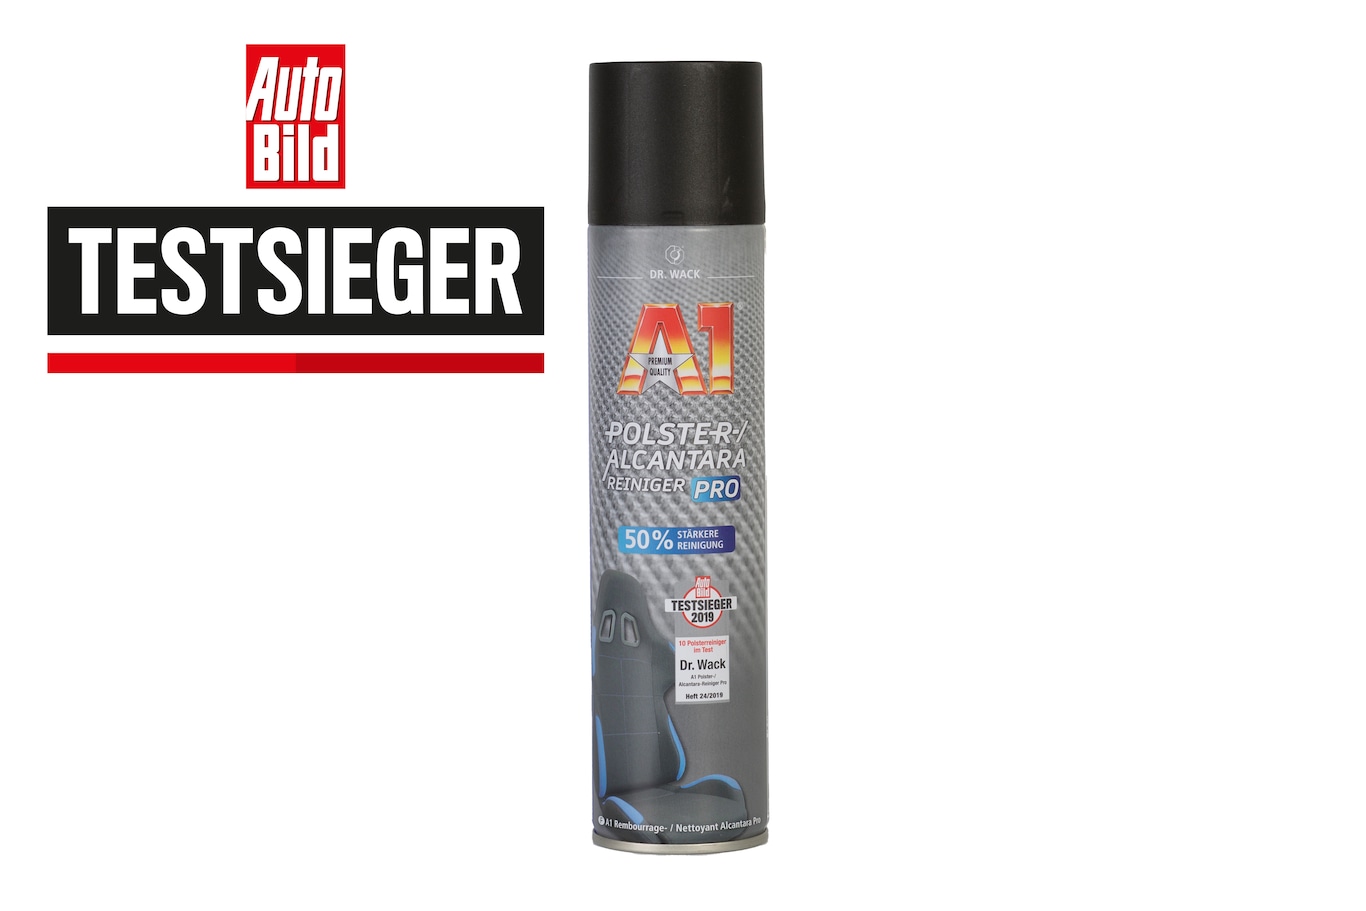 Polster- und Innenreiniger Spray - 400 ml